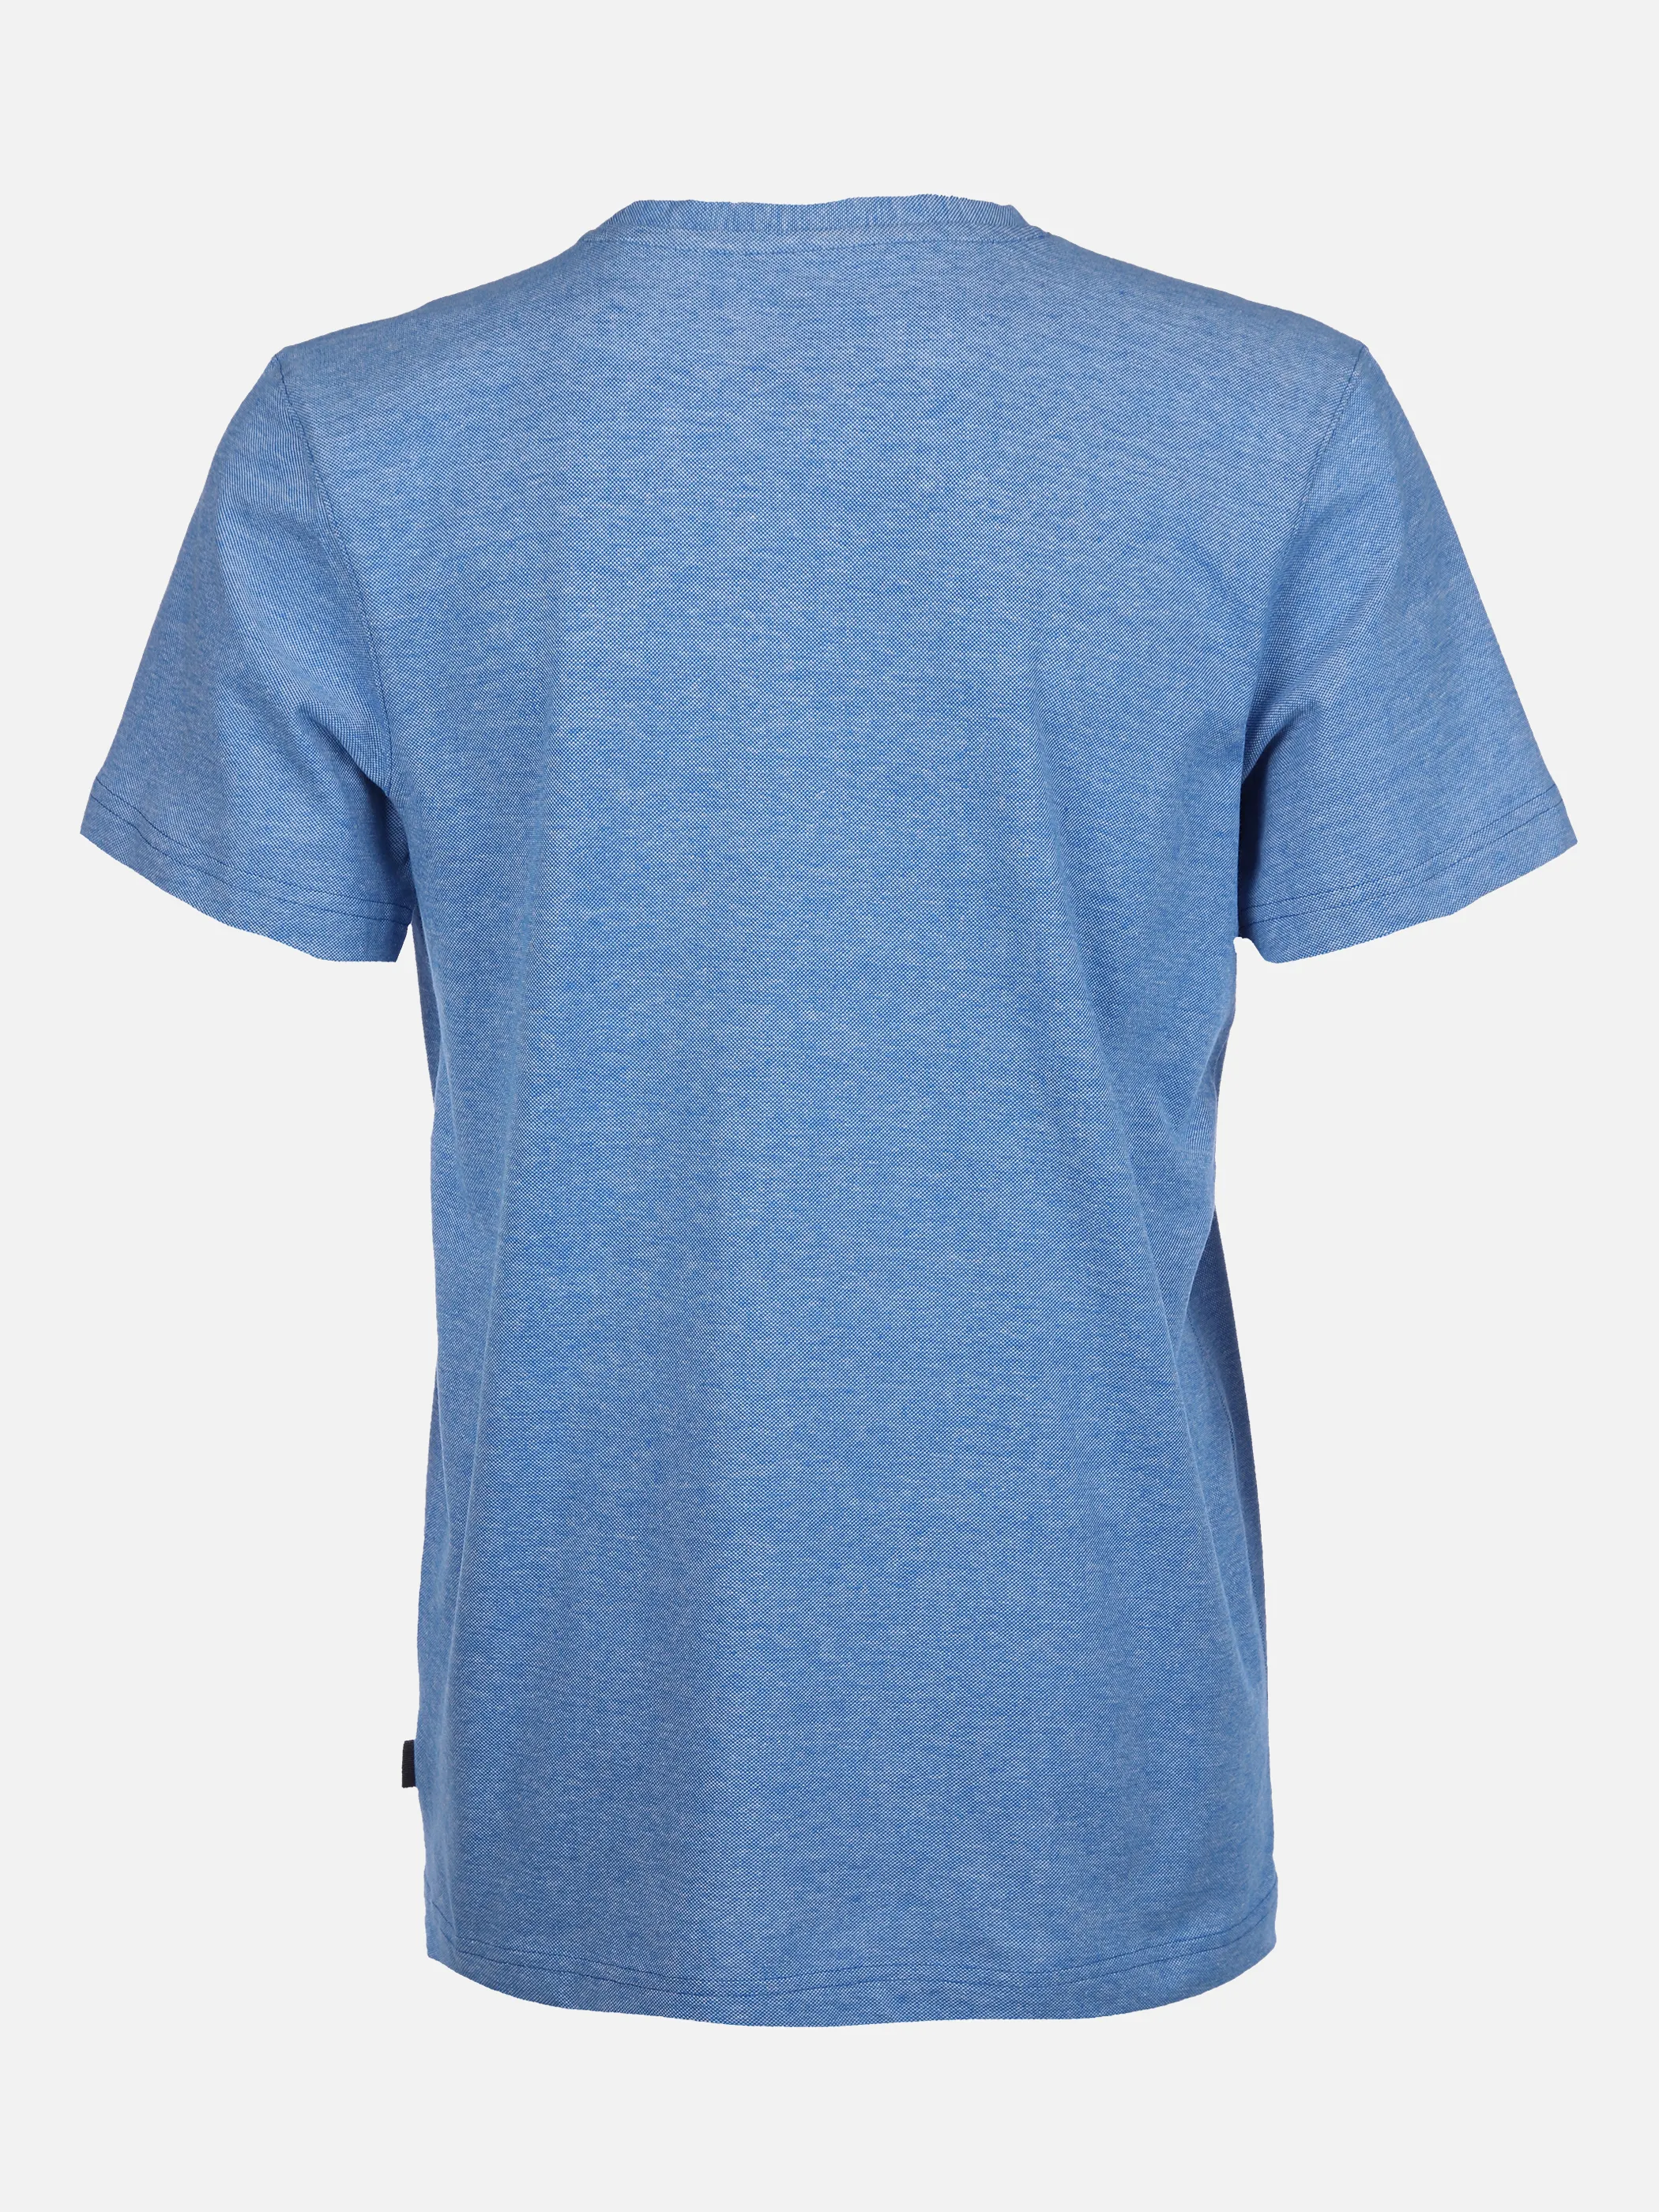 Jim Spencer He. T-Shirt 1/2 Arm pique Blau 862097 BLUE MEL 2